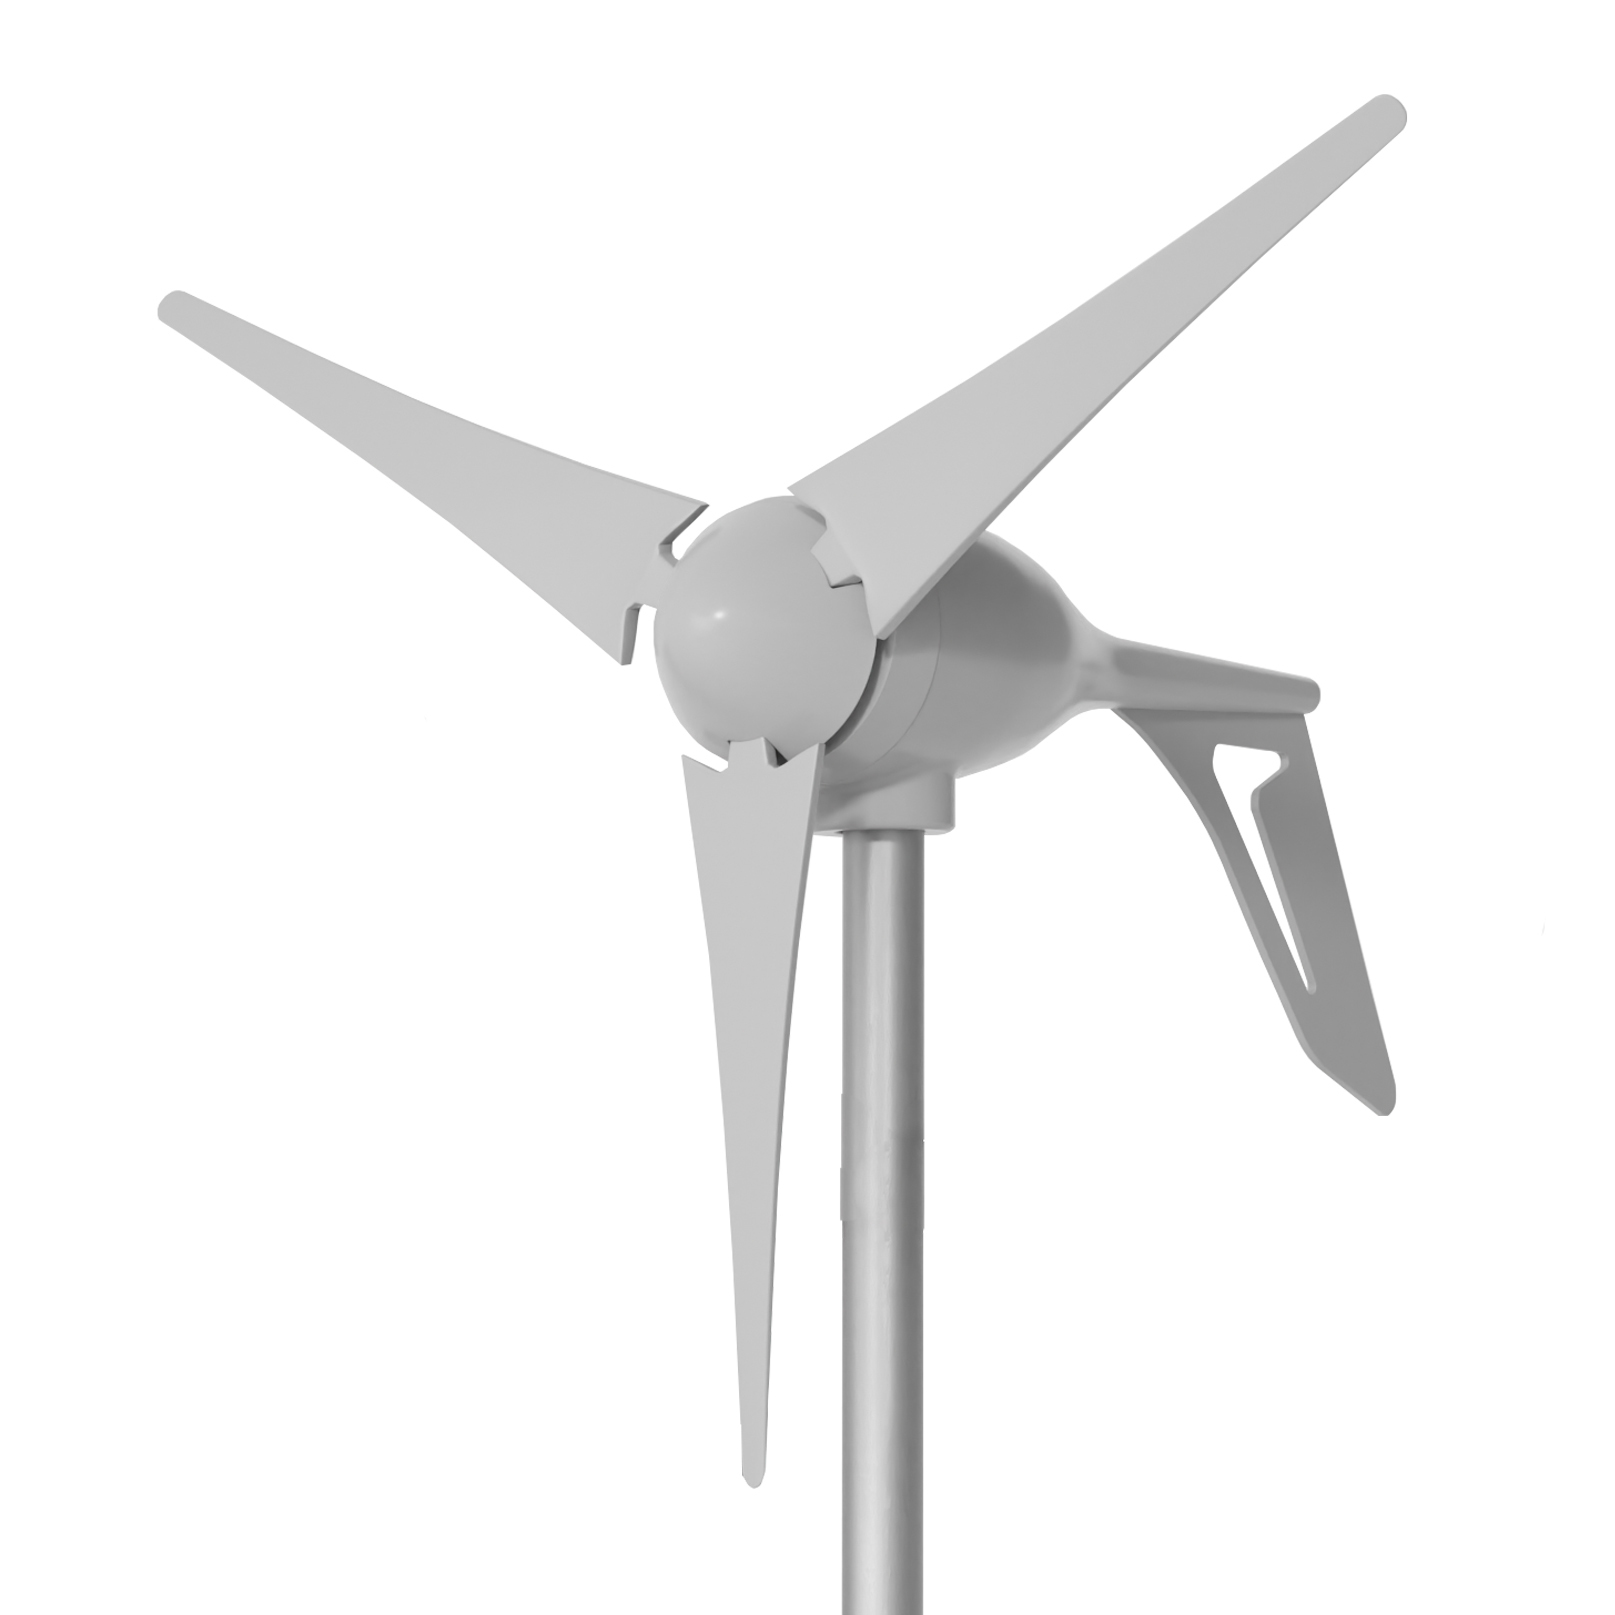 Купить ветрогенератор для частного дома по цене производителя - ветряки от 33 рублей | АЛЬТЭКО